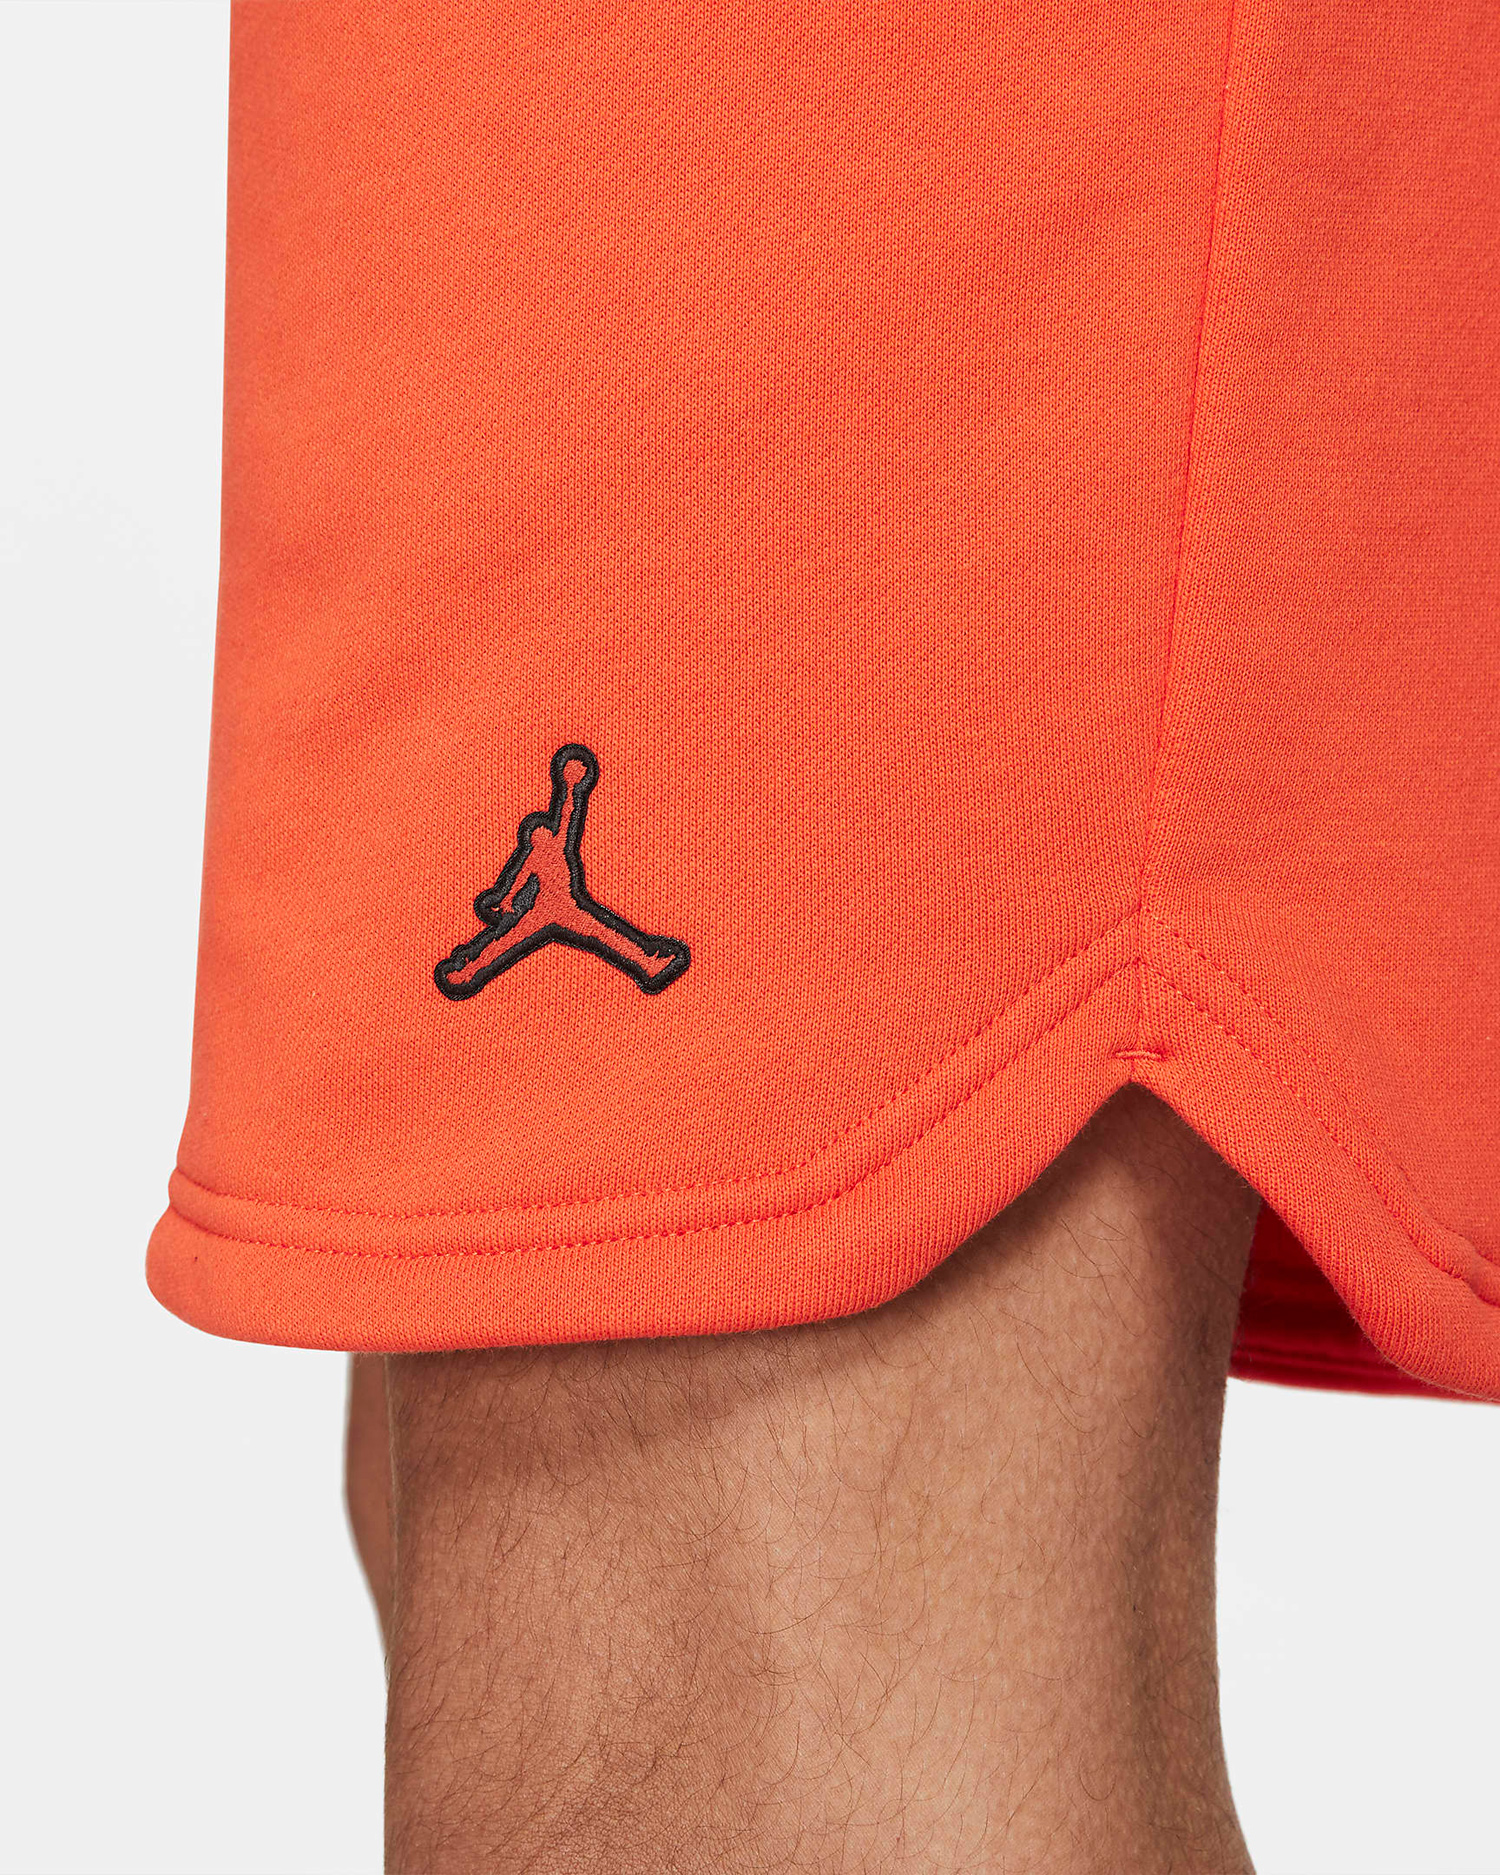 jordan-electro-orange-shorts-2